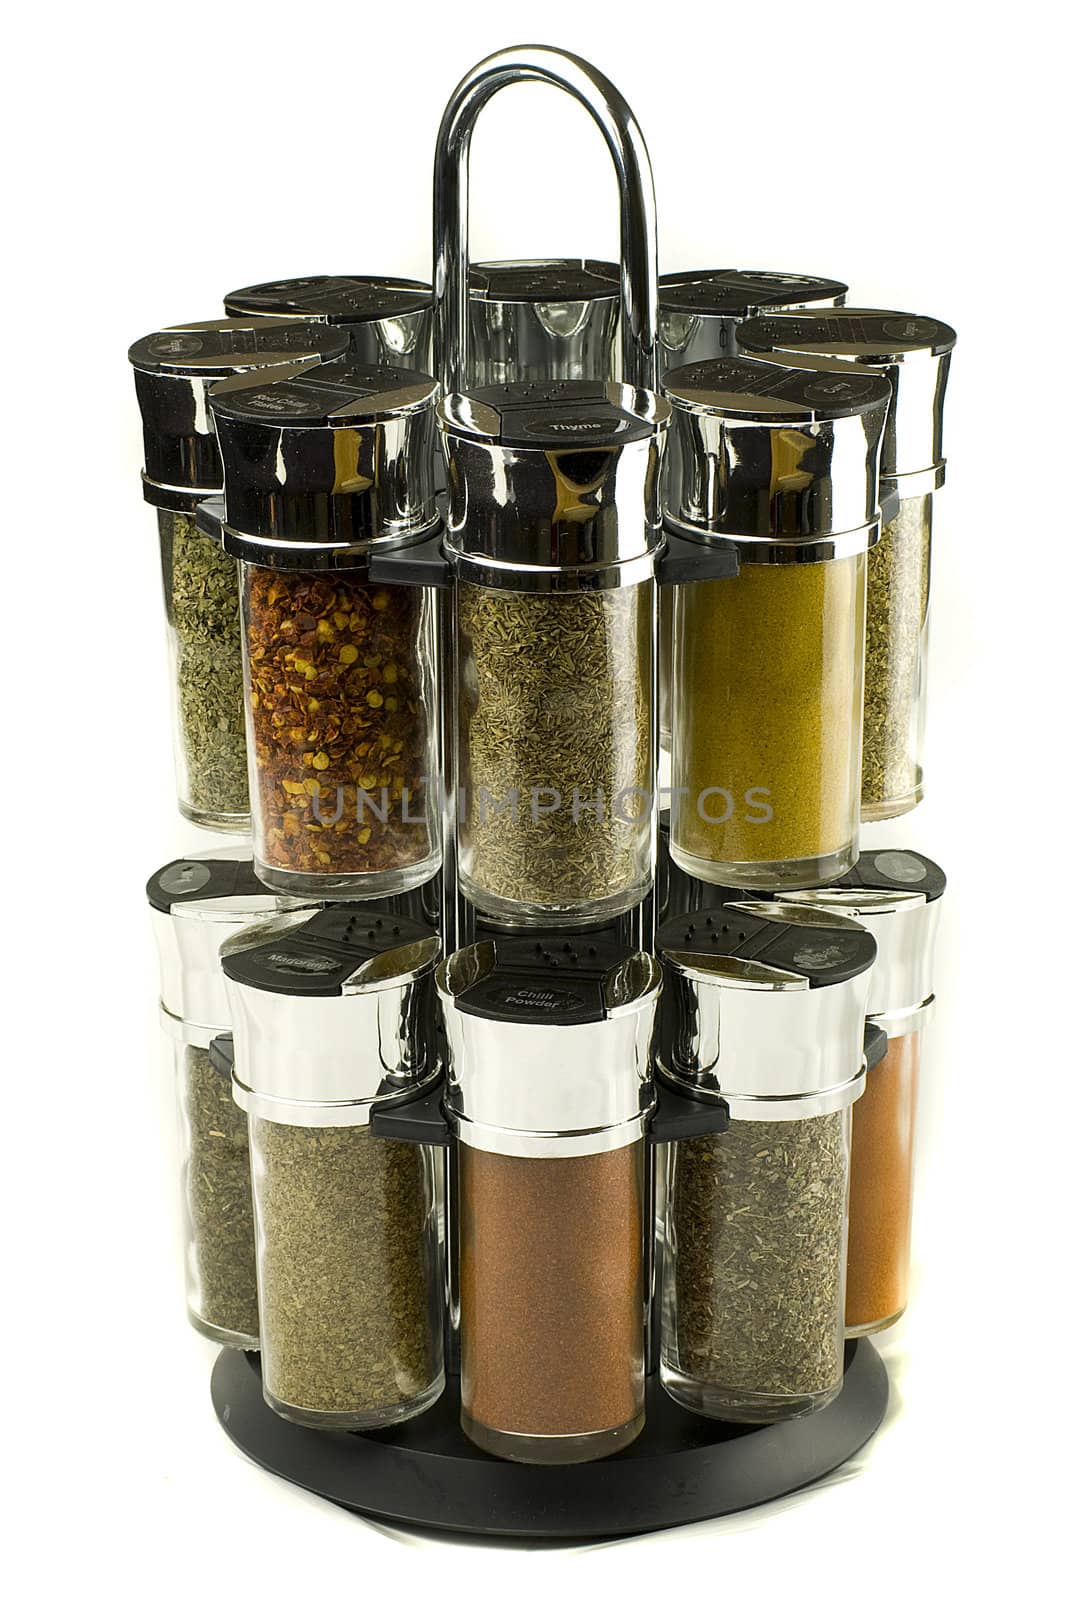 spices set by Dessie_bg